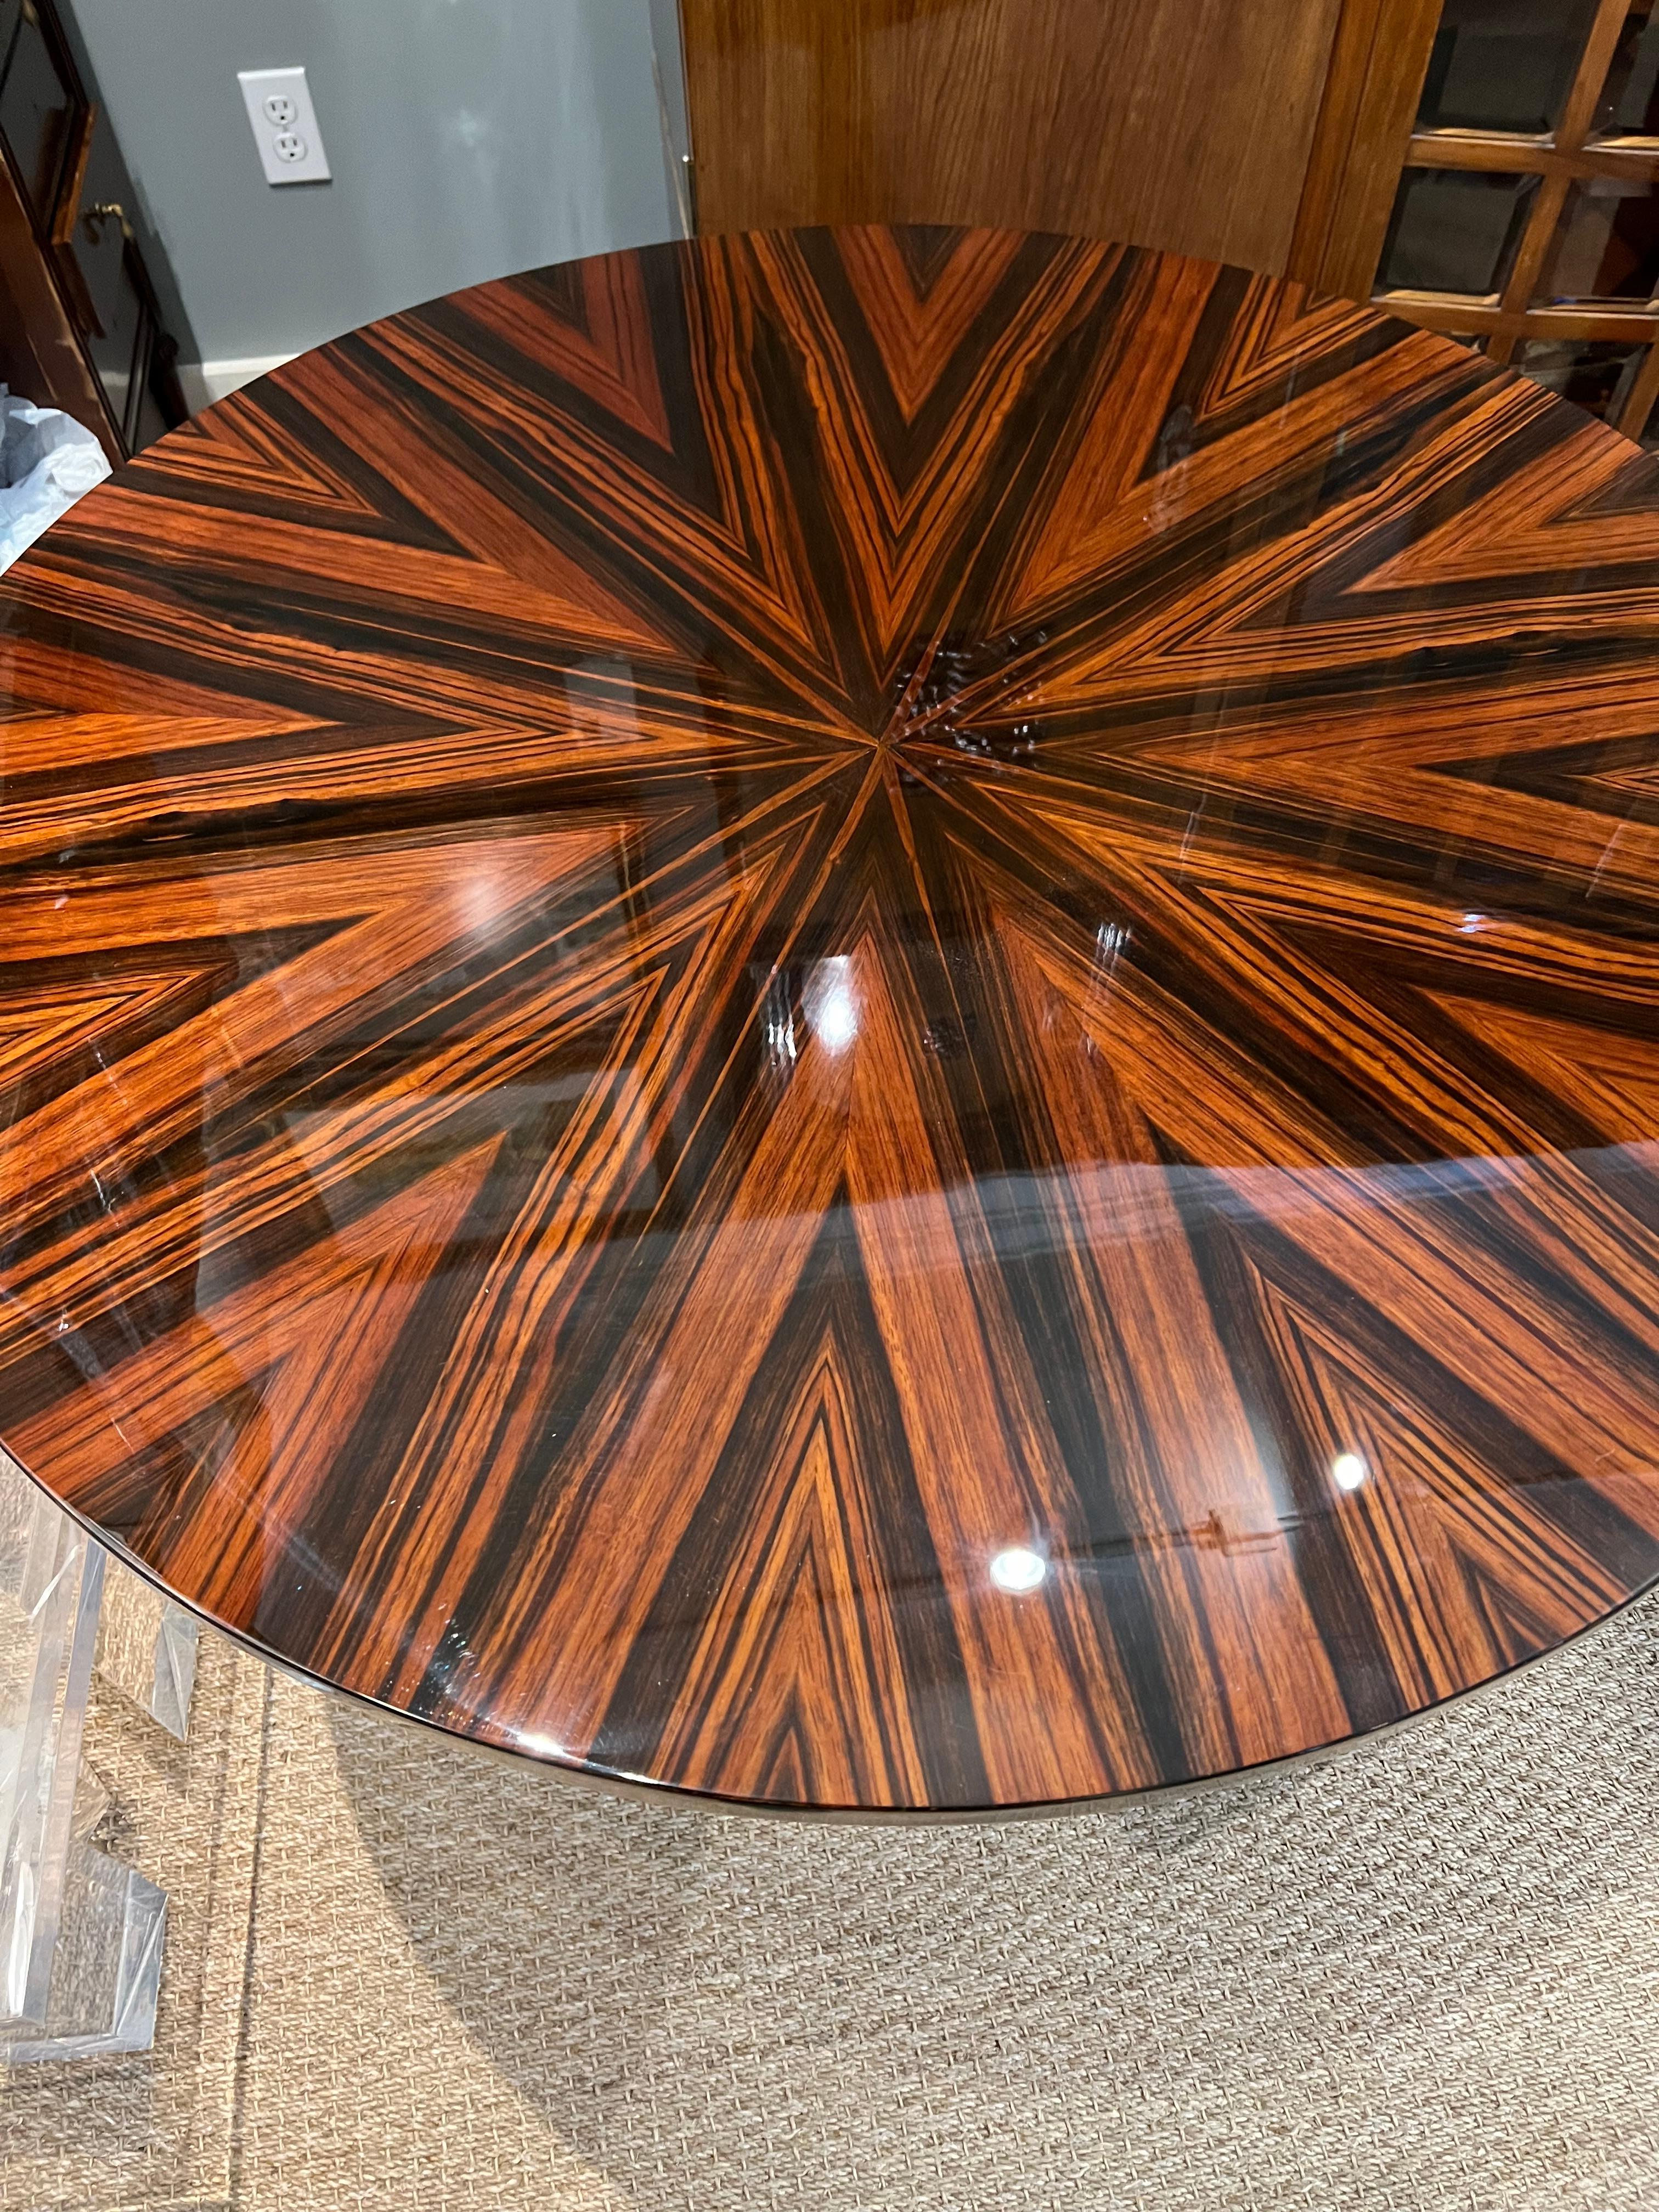 La table est fabriquée en bois de Macassar. Le plateau de la table est orné d'un ruban en laiton sur la partie inférieure. Le plateau de la table est hautement poli pour faire ressortir les magnifiques veines du bois. Repose sur 3 pieds, qui sont